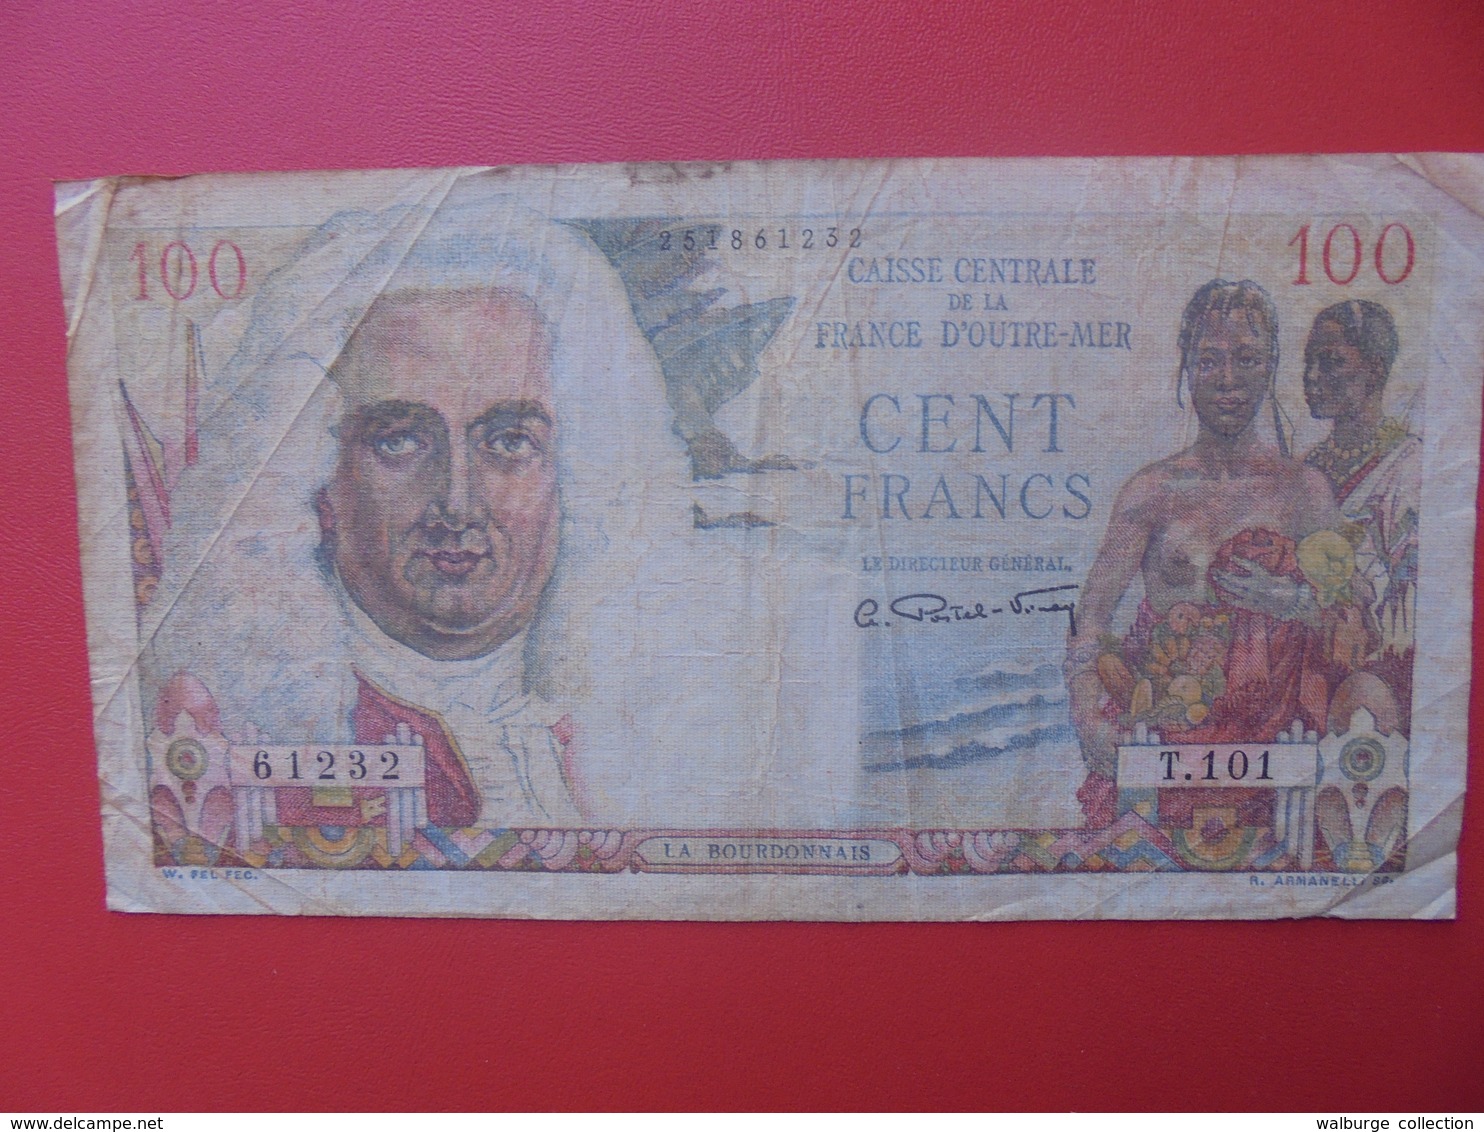 FRANCE D'OUTRE-MER 100 FRANCS 1947 CIRCULER (B.9) - Nouvelle-Calédonie 1873-1985